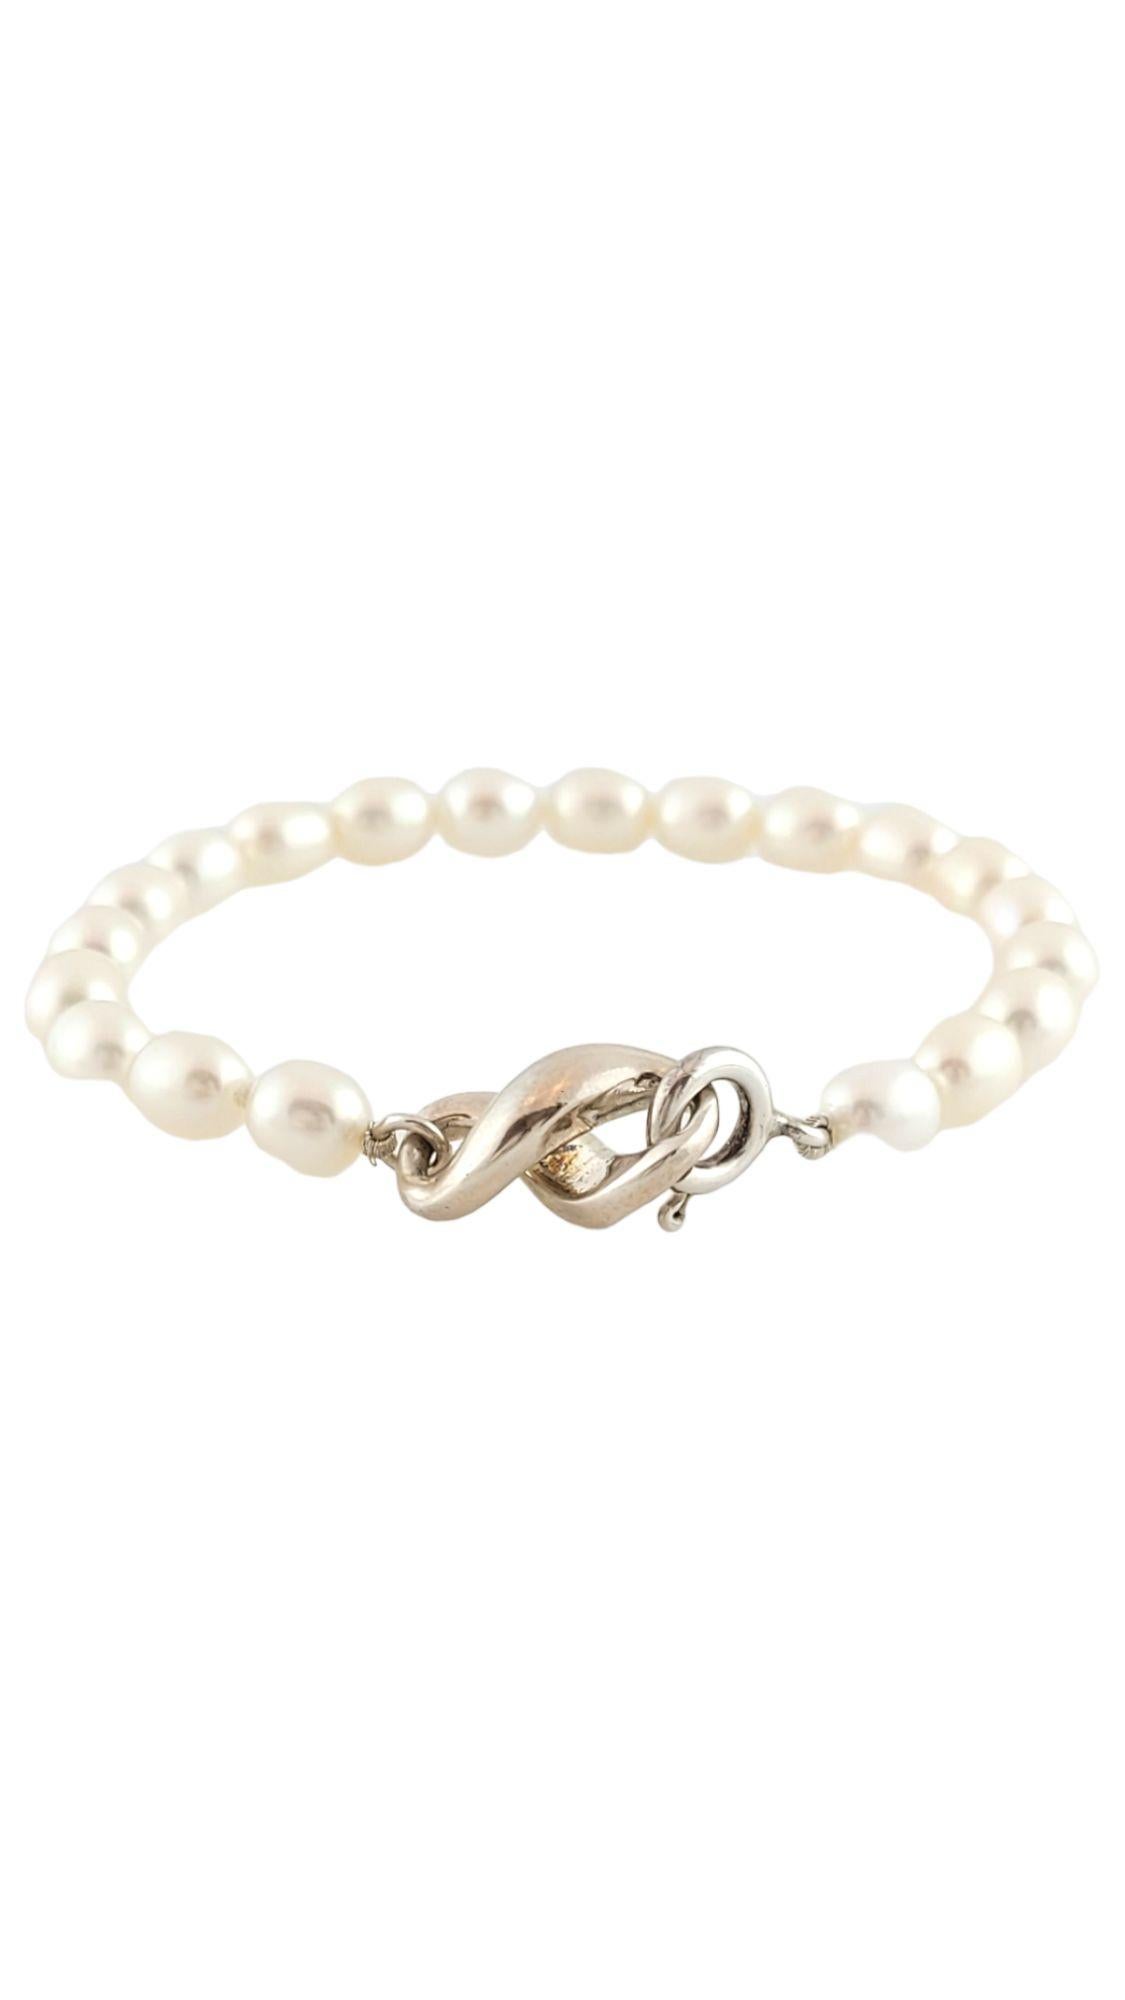 Tiffany & Co Sterling Silver Infinity Figure 8 Pearl Bracelet

Ce magnifique bracelet en argent sterling en forme de 8 à l'infini est orné de 20 perles magnifiques.

Perles d'environ 6,4 mm chacune

Longueur : 6.25